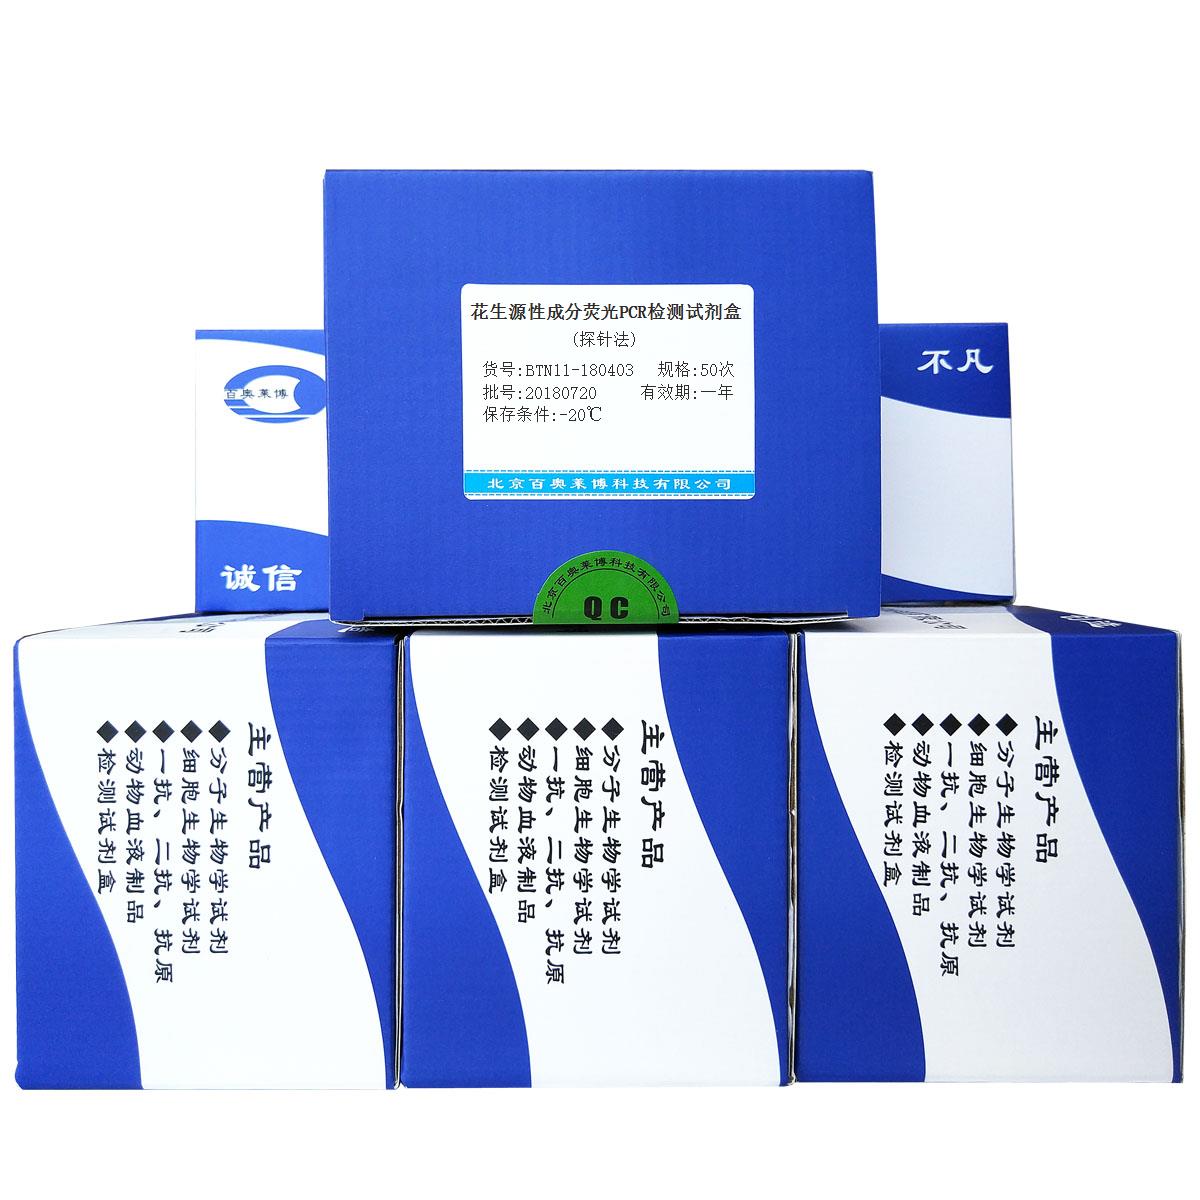 花生源性成分荧光PCR检测试剂盒(探针法)